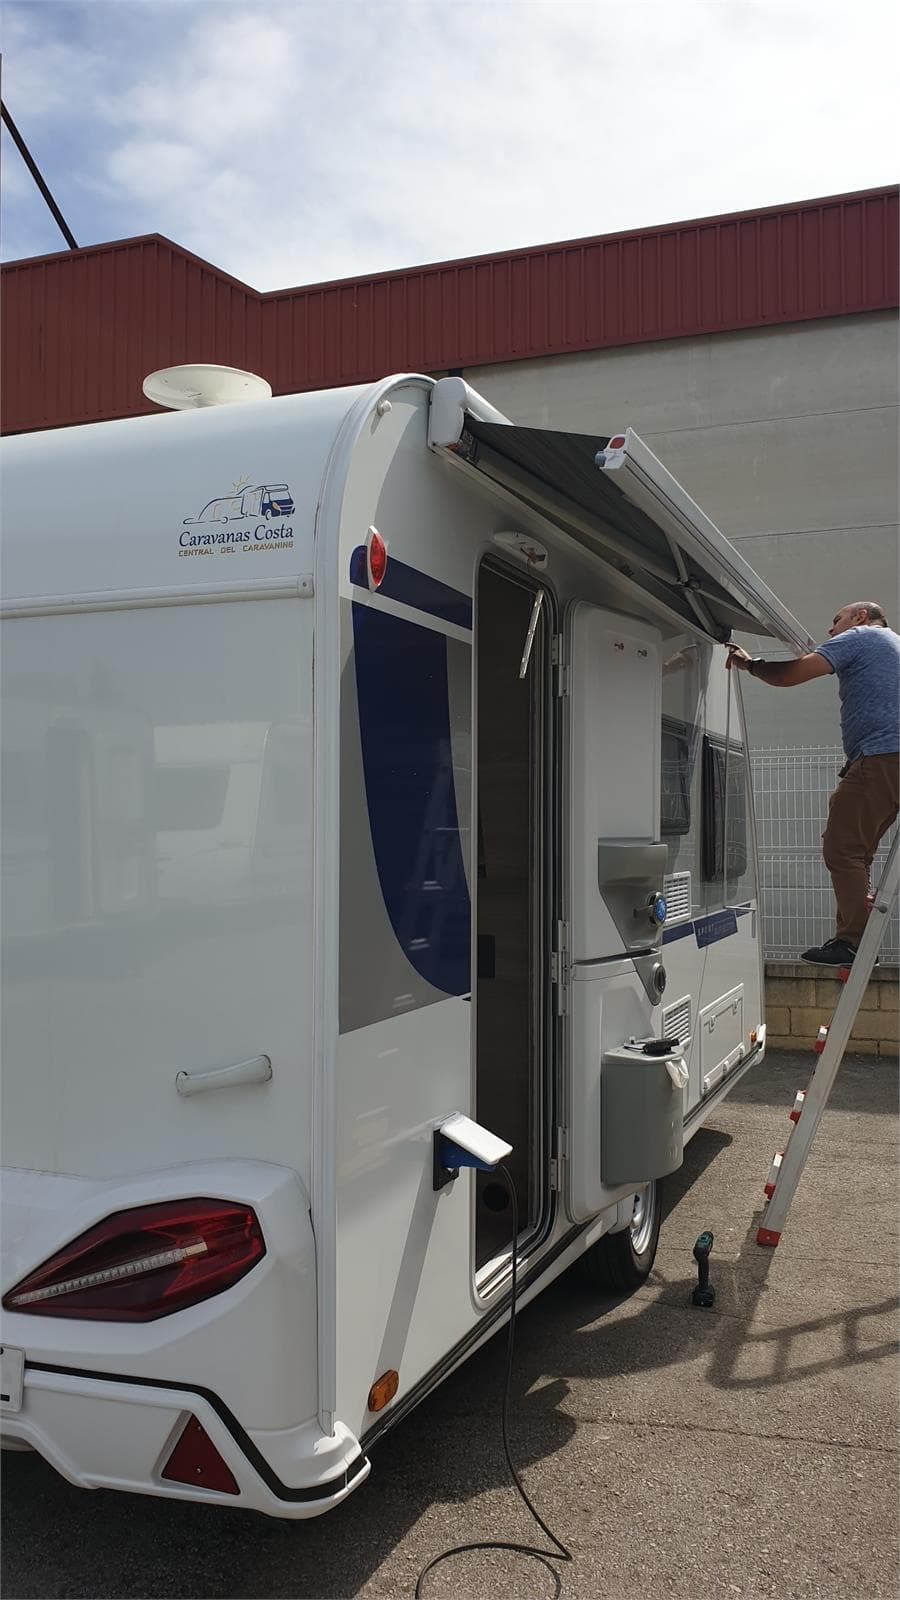 Servicio de reparación de autocaravanas, caravanas y campers en Galicia - Imagen 1